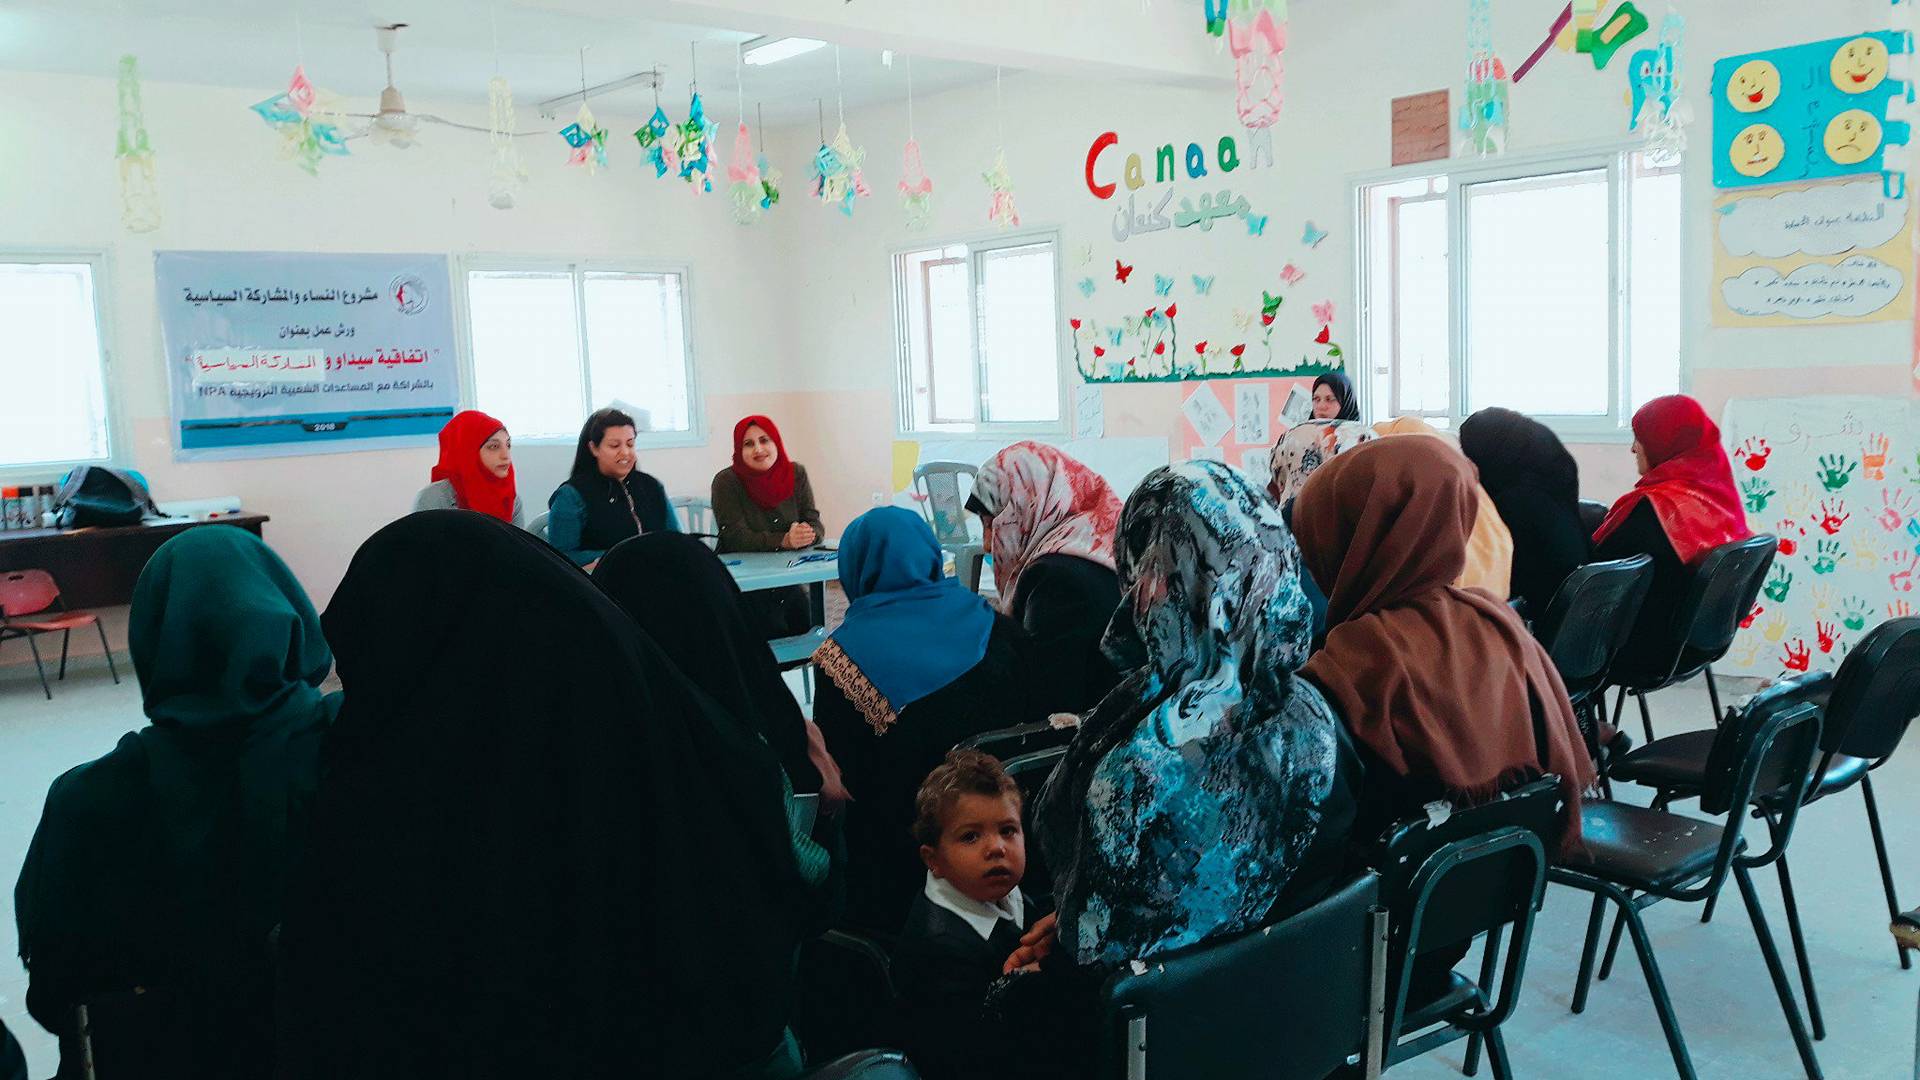 اتحاد لجان المرأة يفتتح سلسلة من الورش التوعوية حول المشاركة السياسية واتفاقية سيداو في شمال غزة